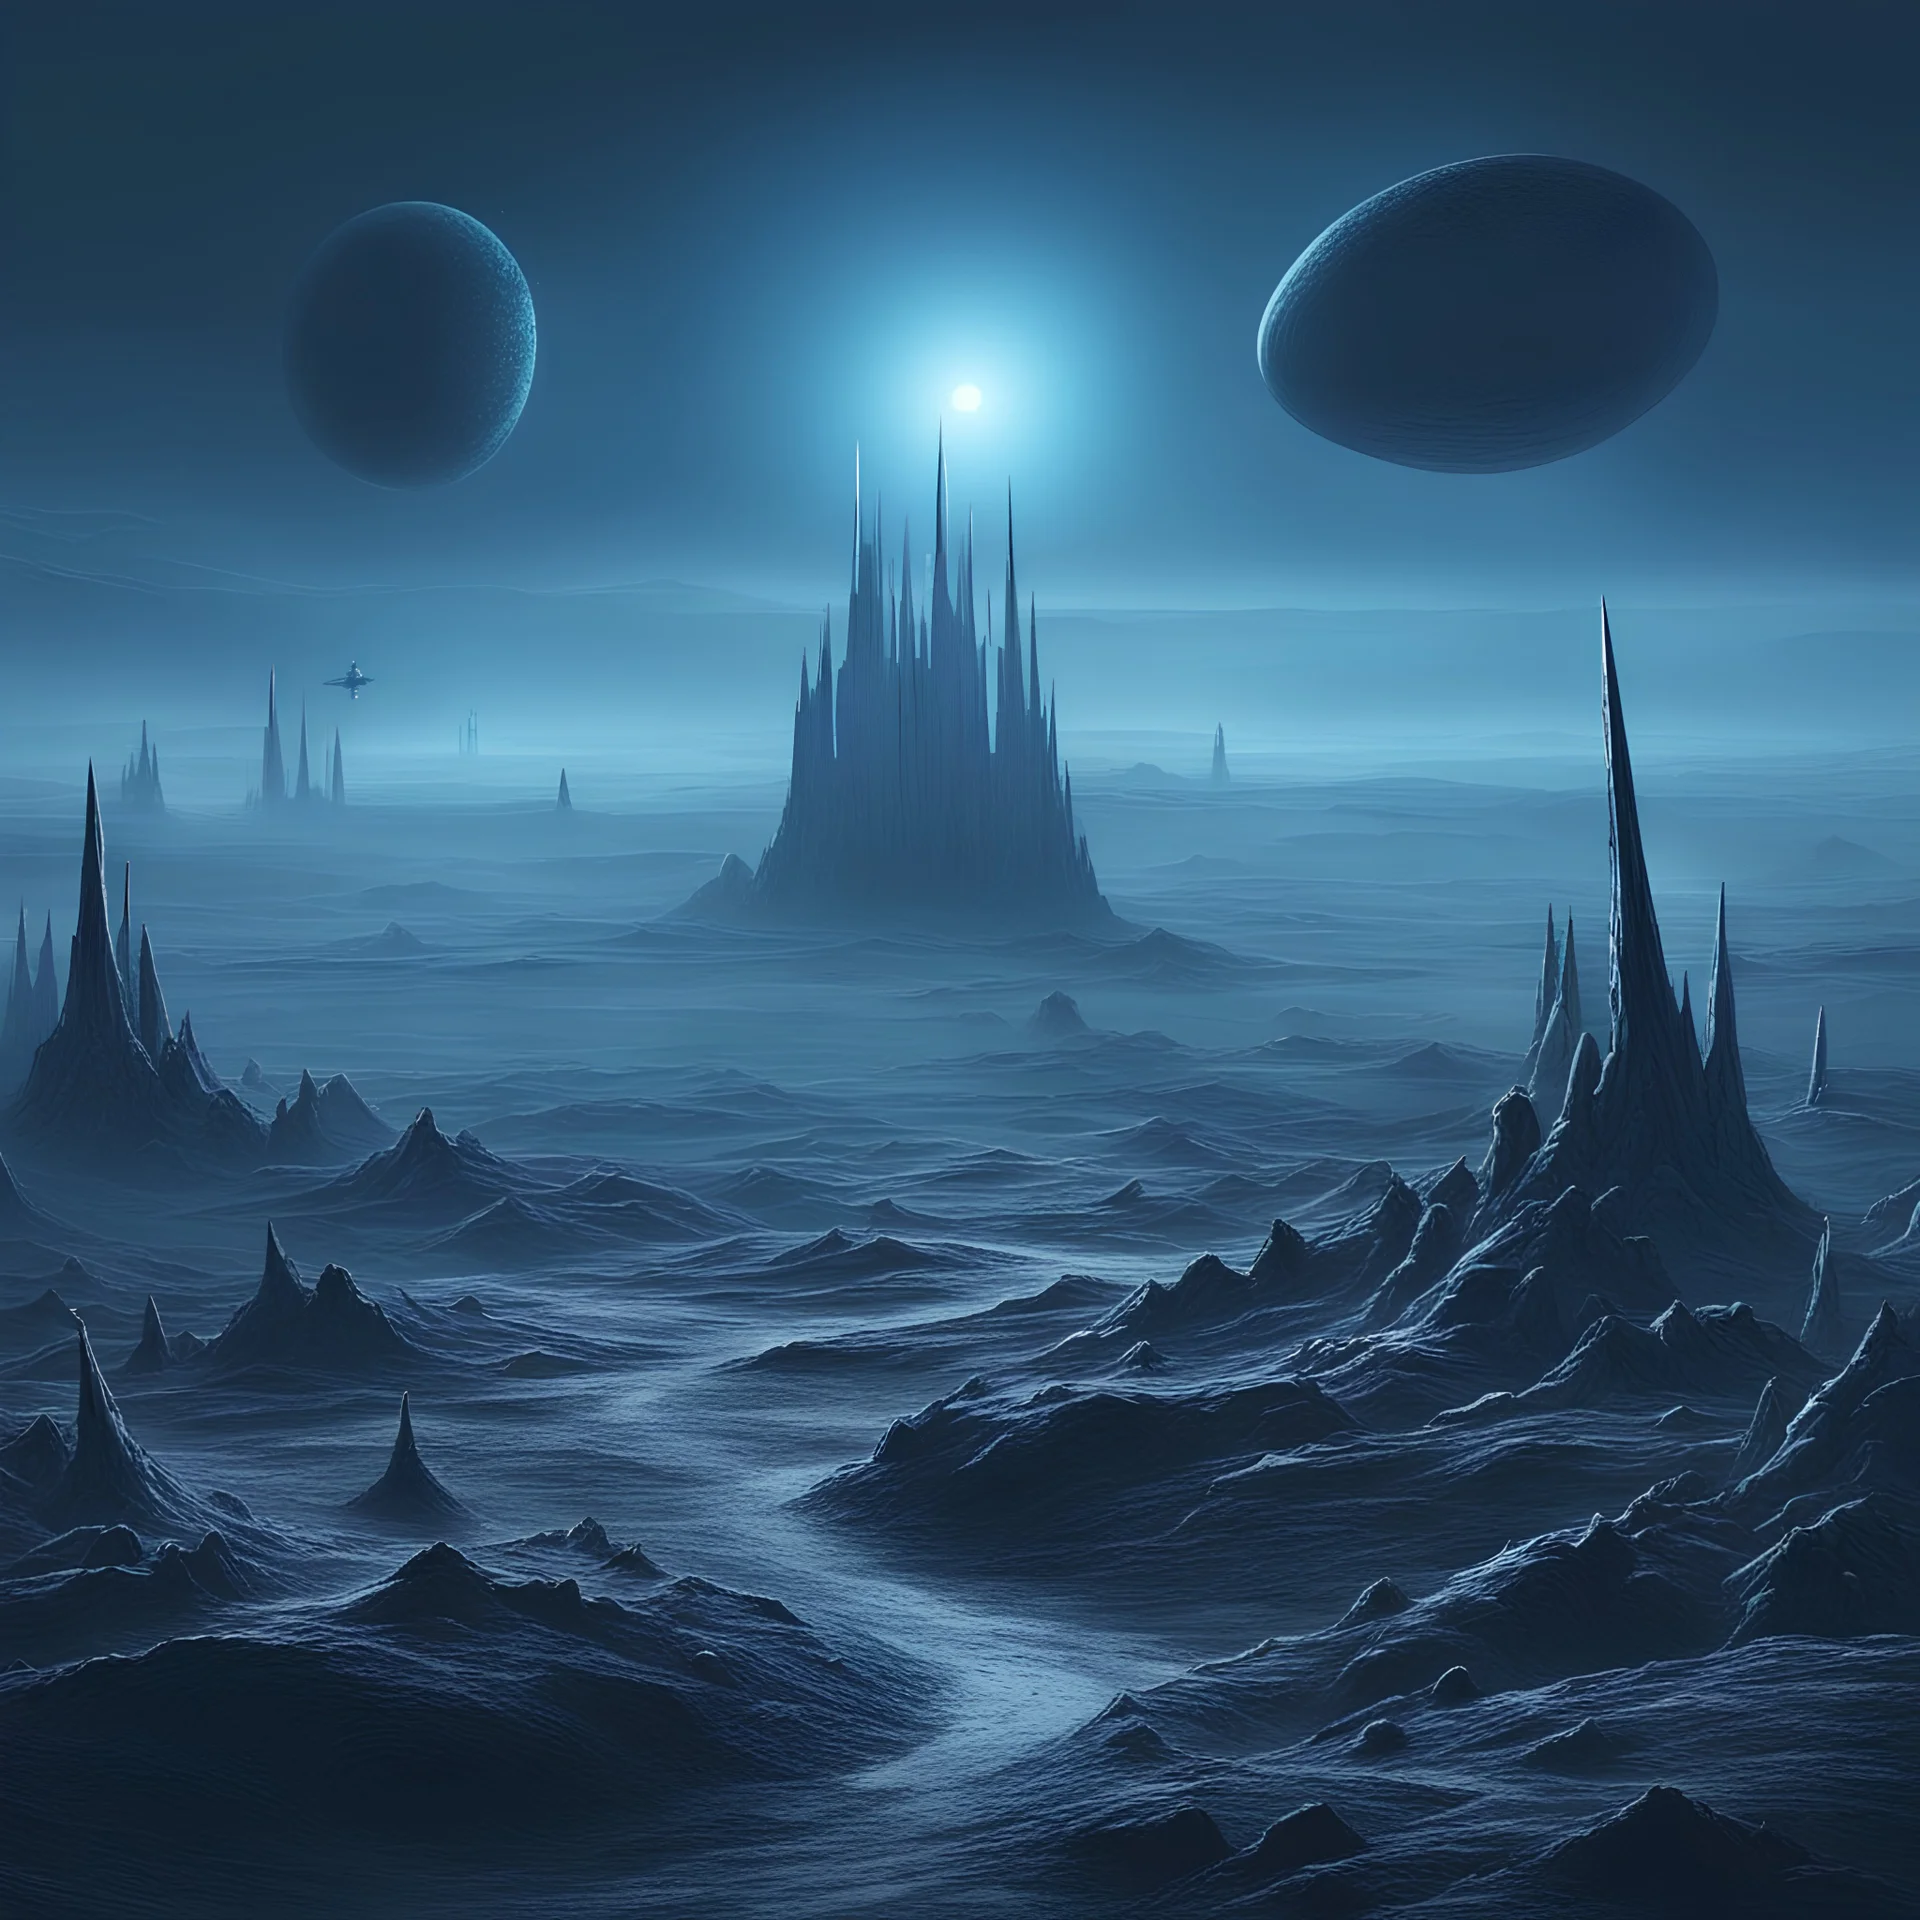 dark frozen alien landscape. some tiny, spiky blue evil alien creatures. spacecraft in the distance. planet in the distance. some mist